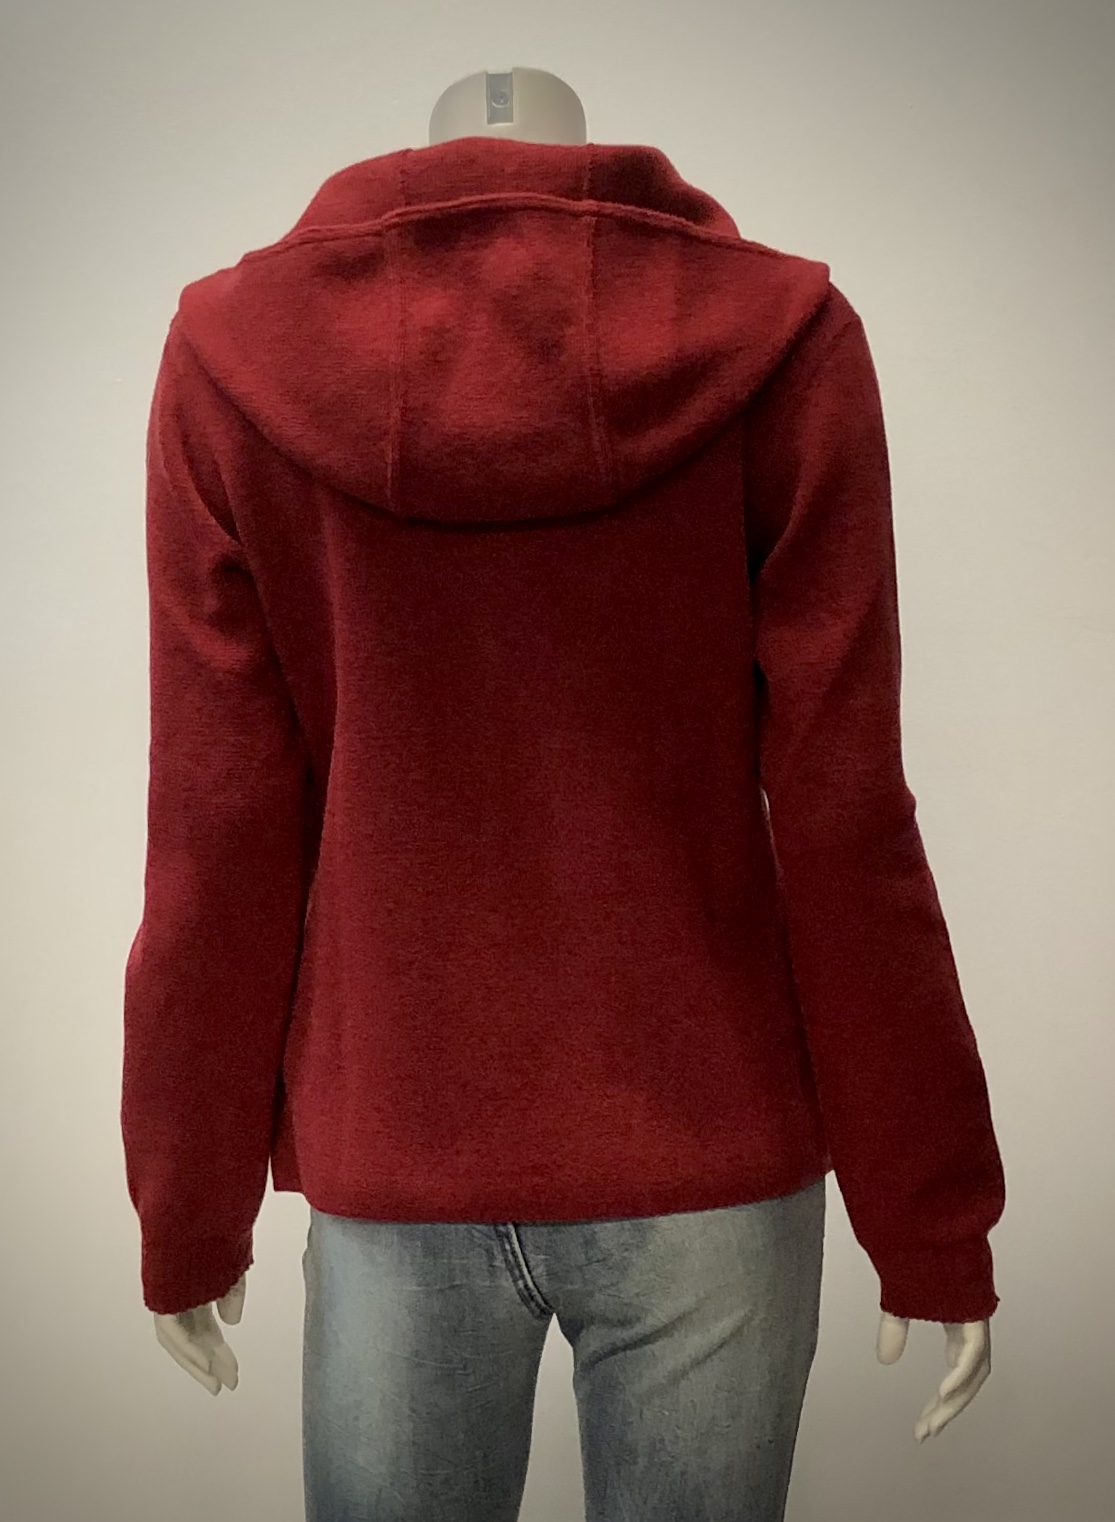 Kapuzen-Wolljacke, einfarbig in hellgrau und rot aus 100% Schurwolle, von DUNQUE by SCHWEIKARDT MODEN